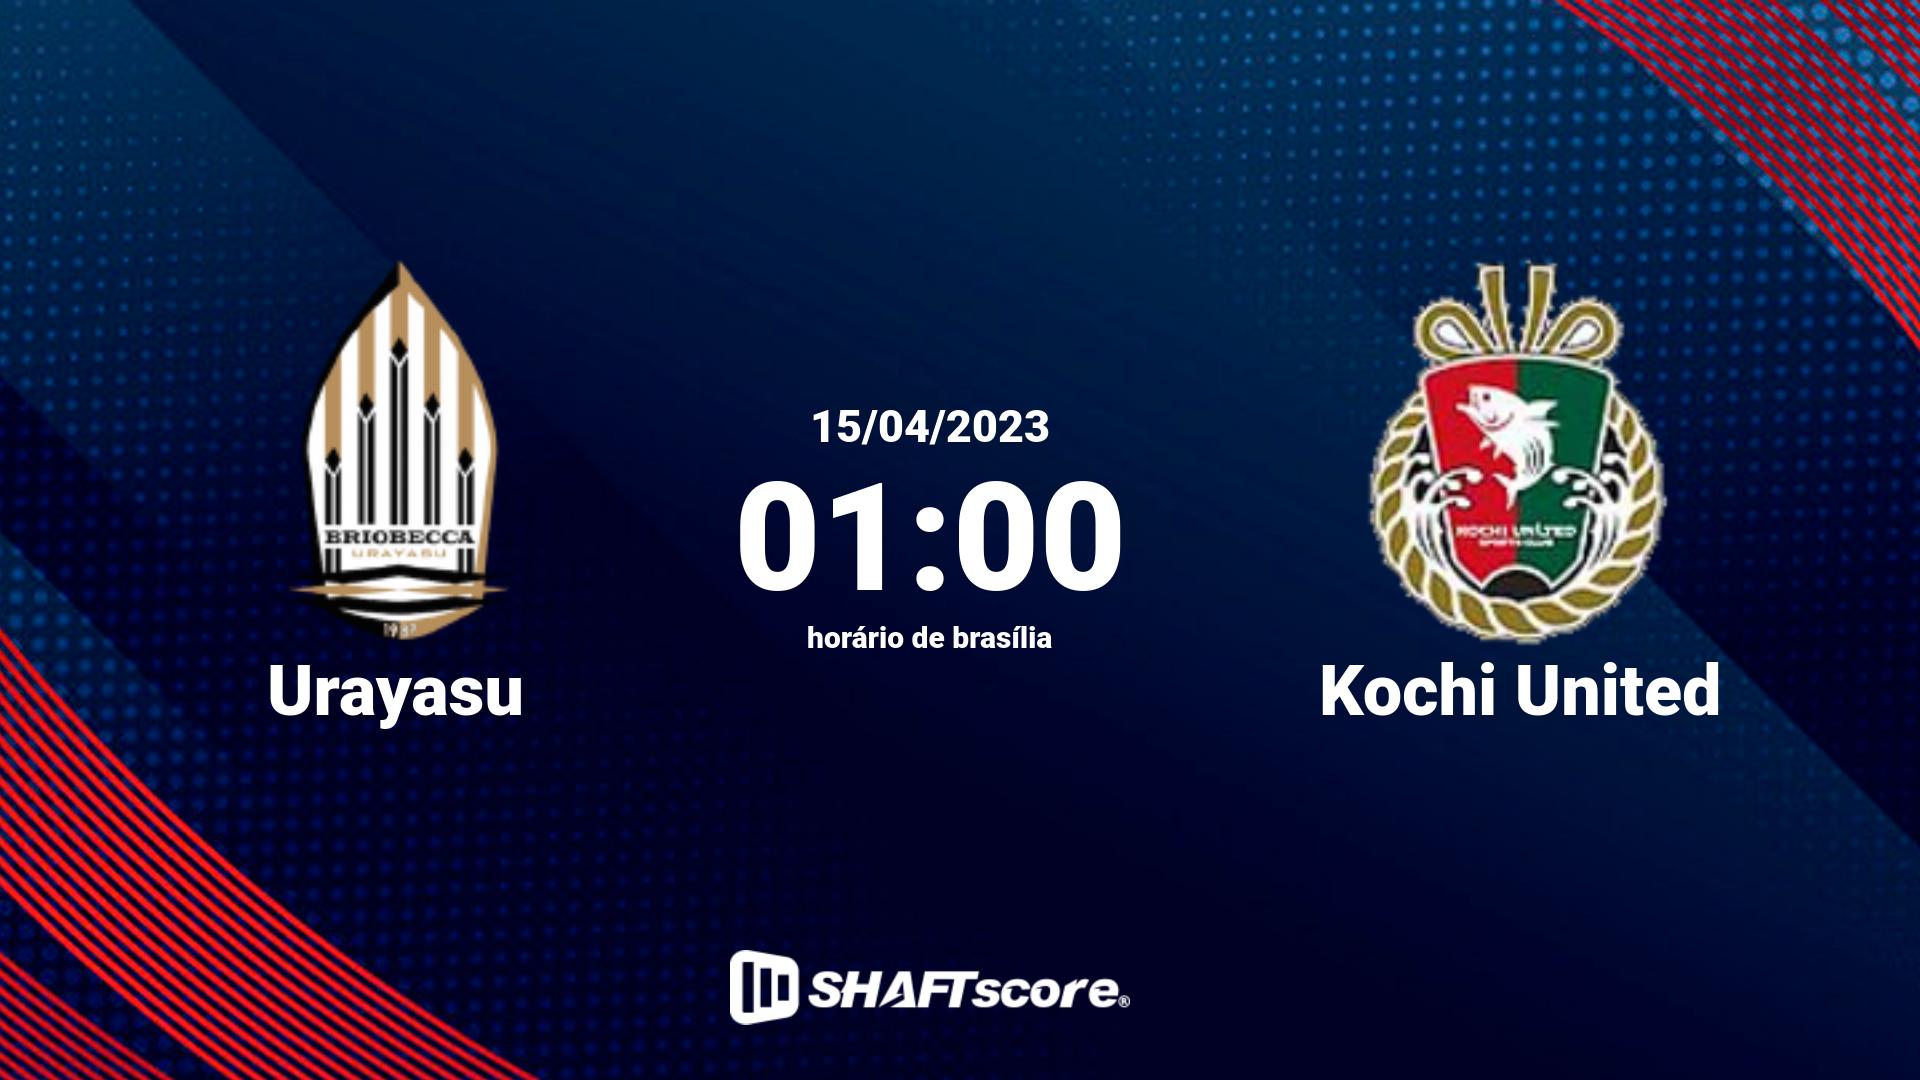 Estatísticas do jogo Urayasu vs Kochi United 15.04 01:00